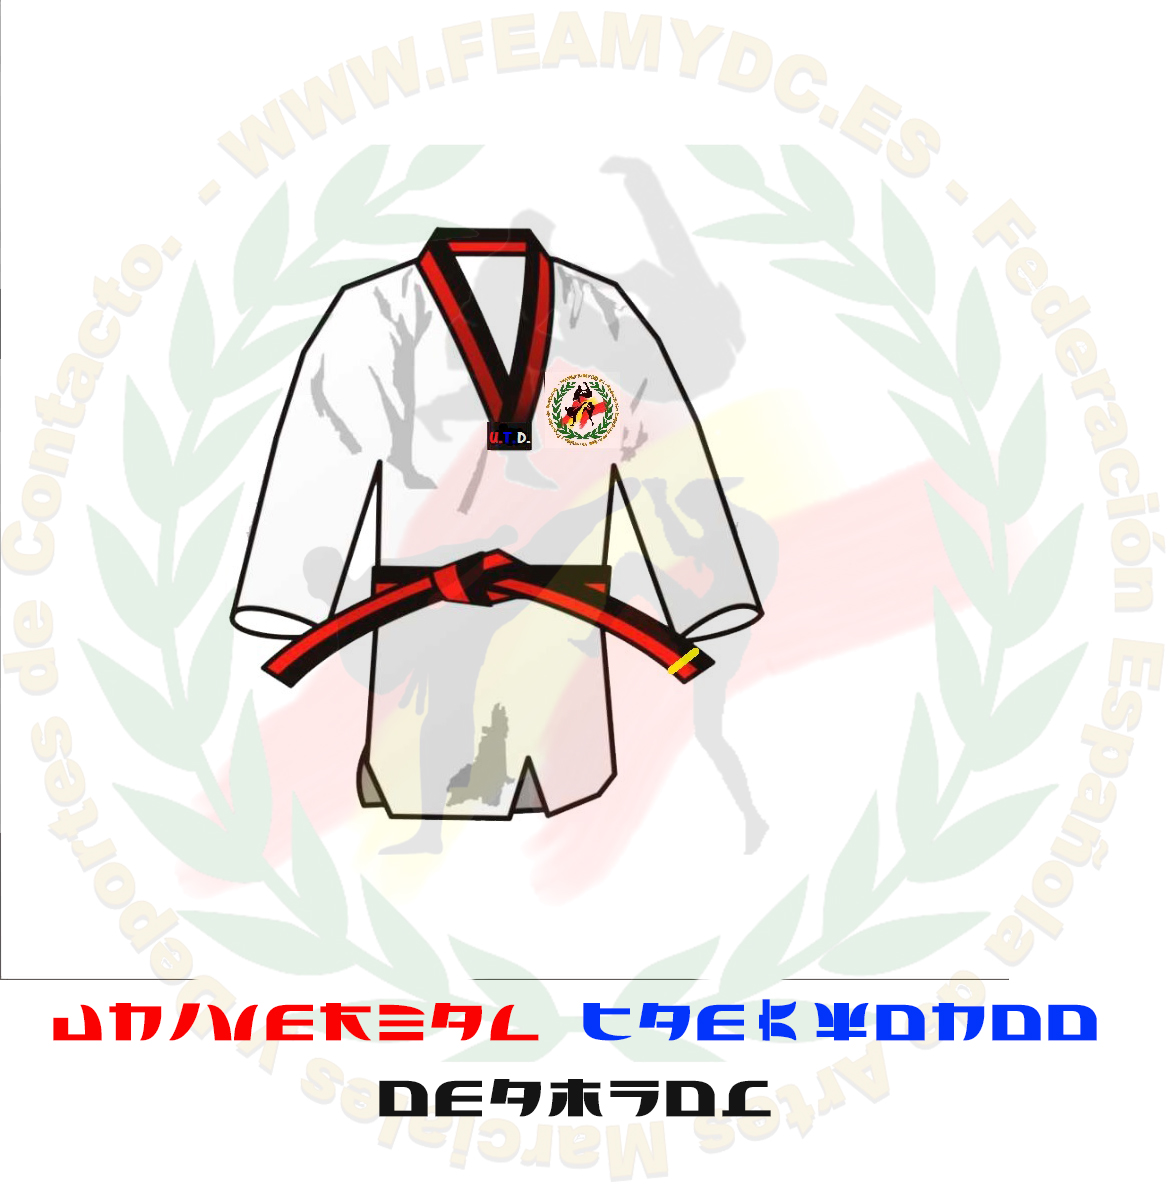 La ciudad casete Tormenta Grados y cinturones Universal Taekwon-do DEAMYDC (U.T.D.) – Federación  Española de Artes Marciales y Deportes de Contacto